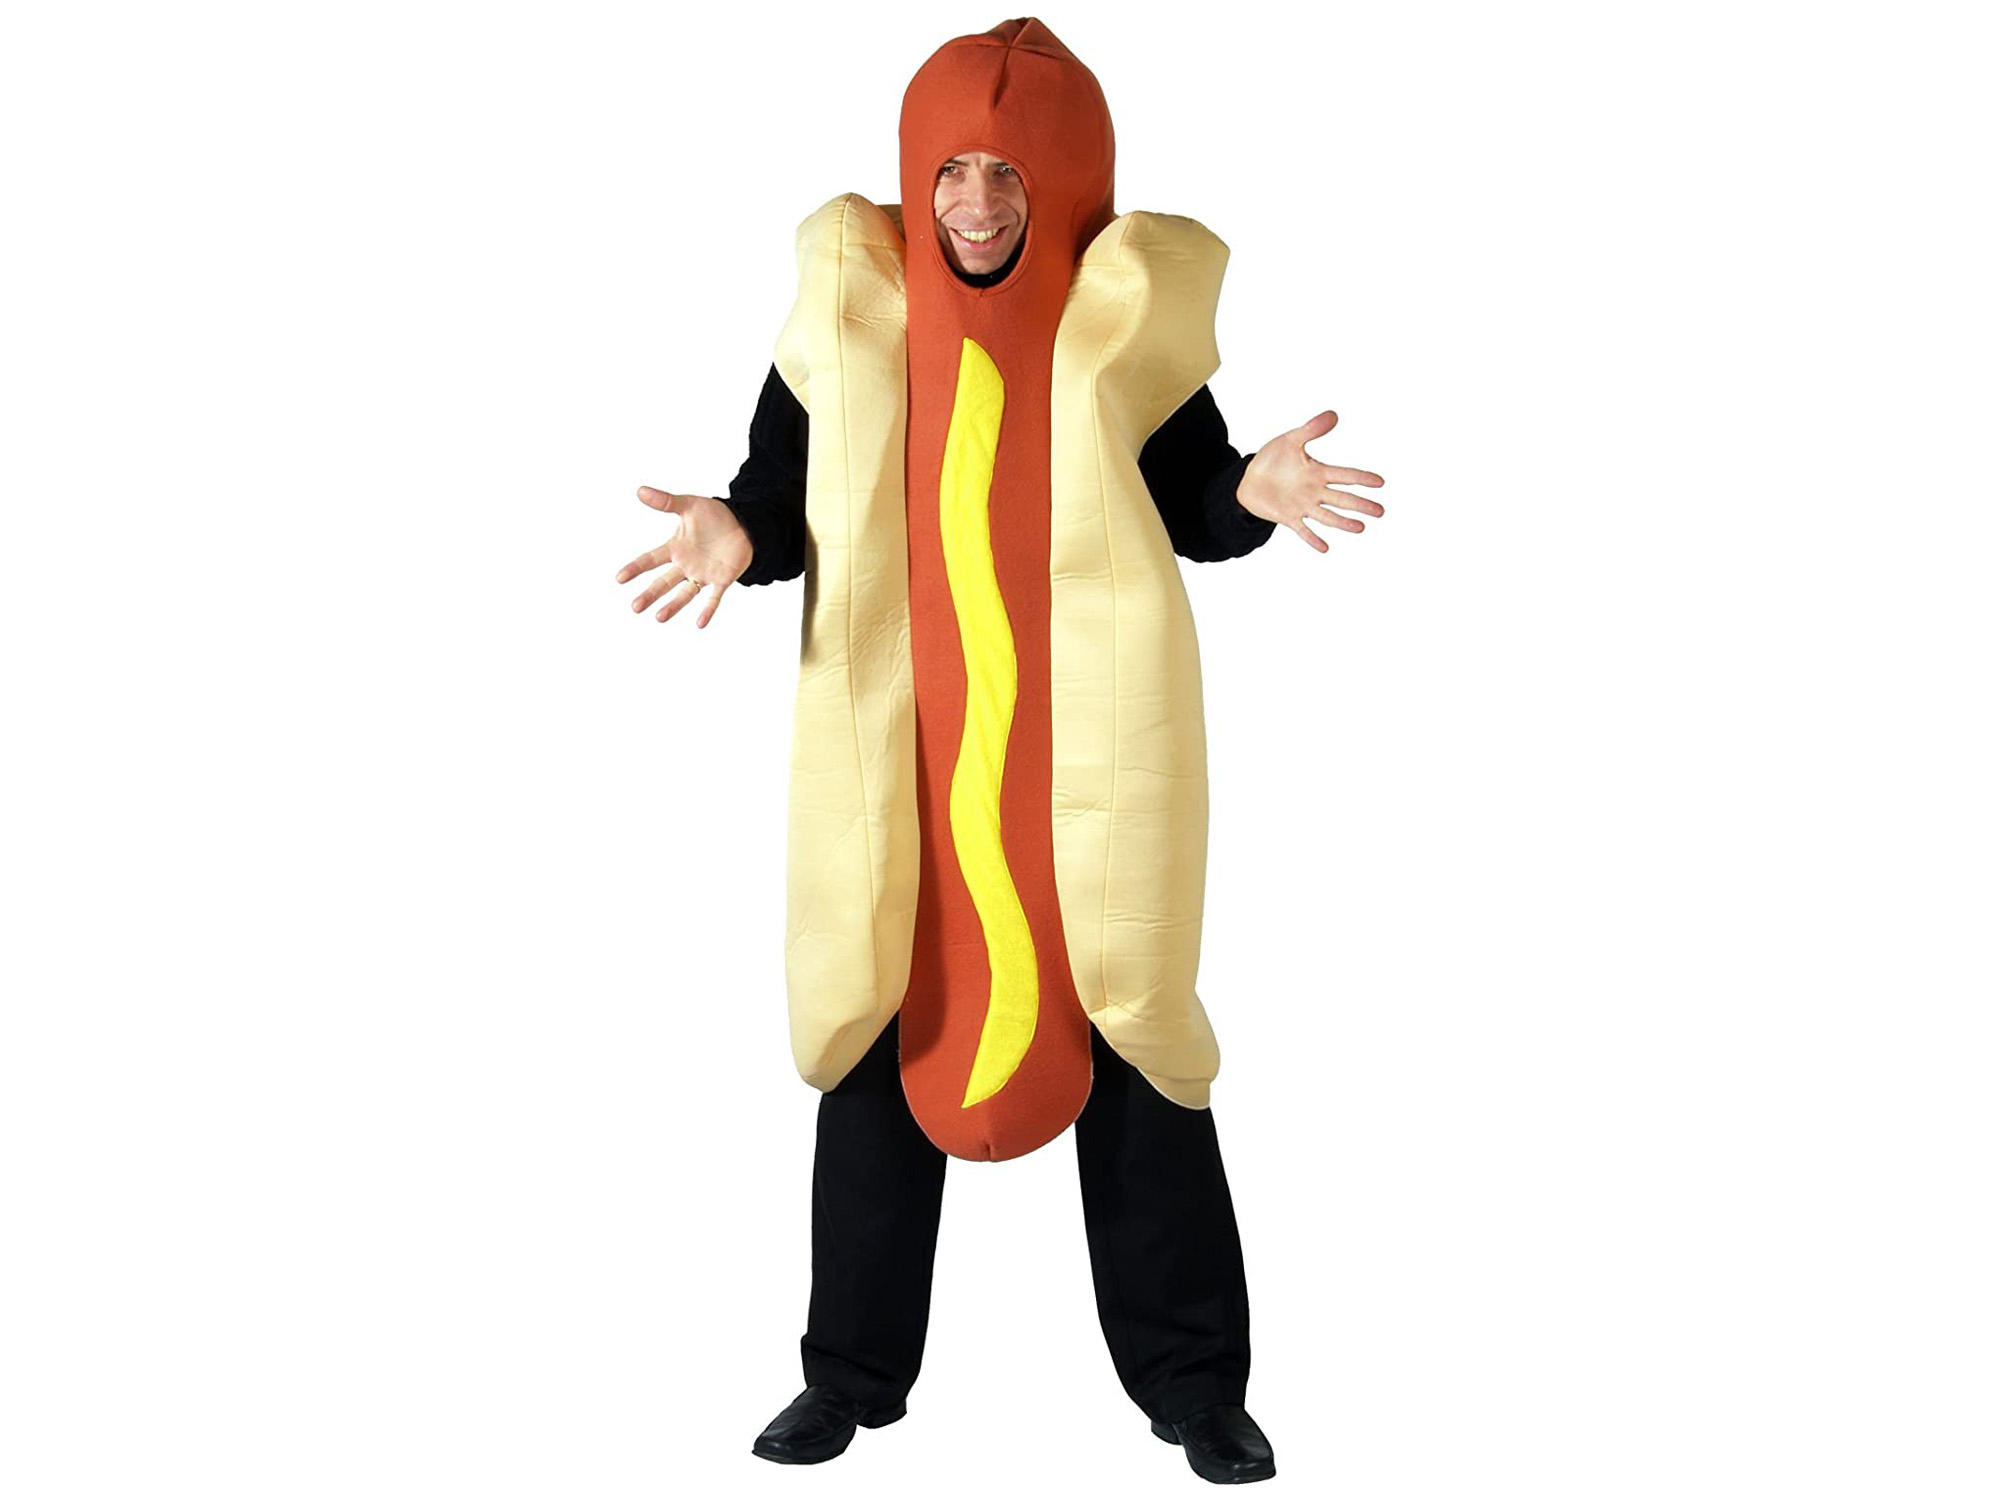 Giant Hot Dog Costume - Amazon